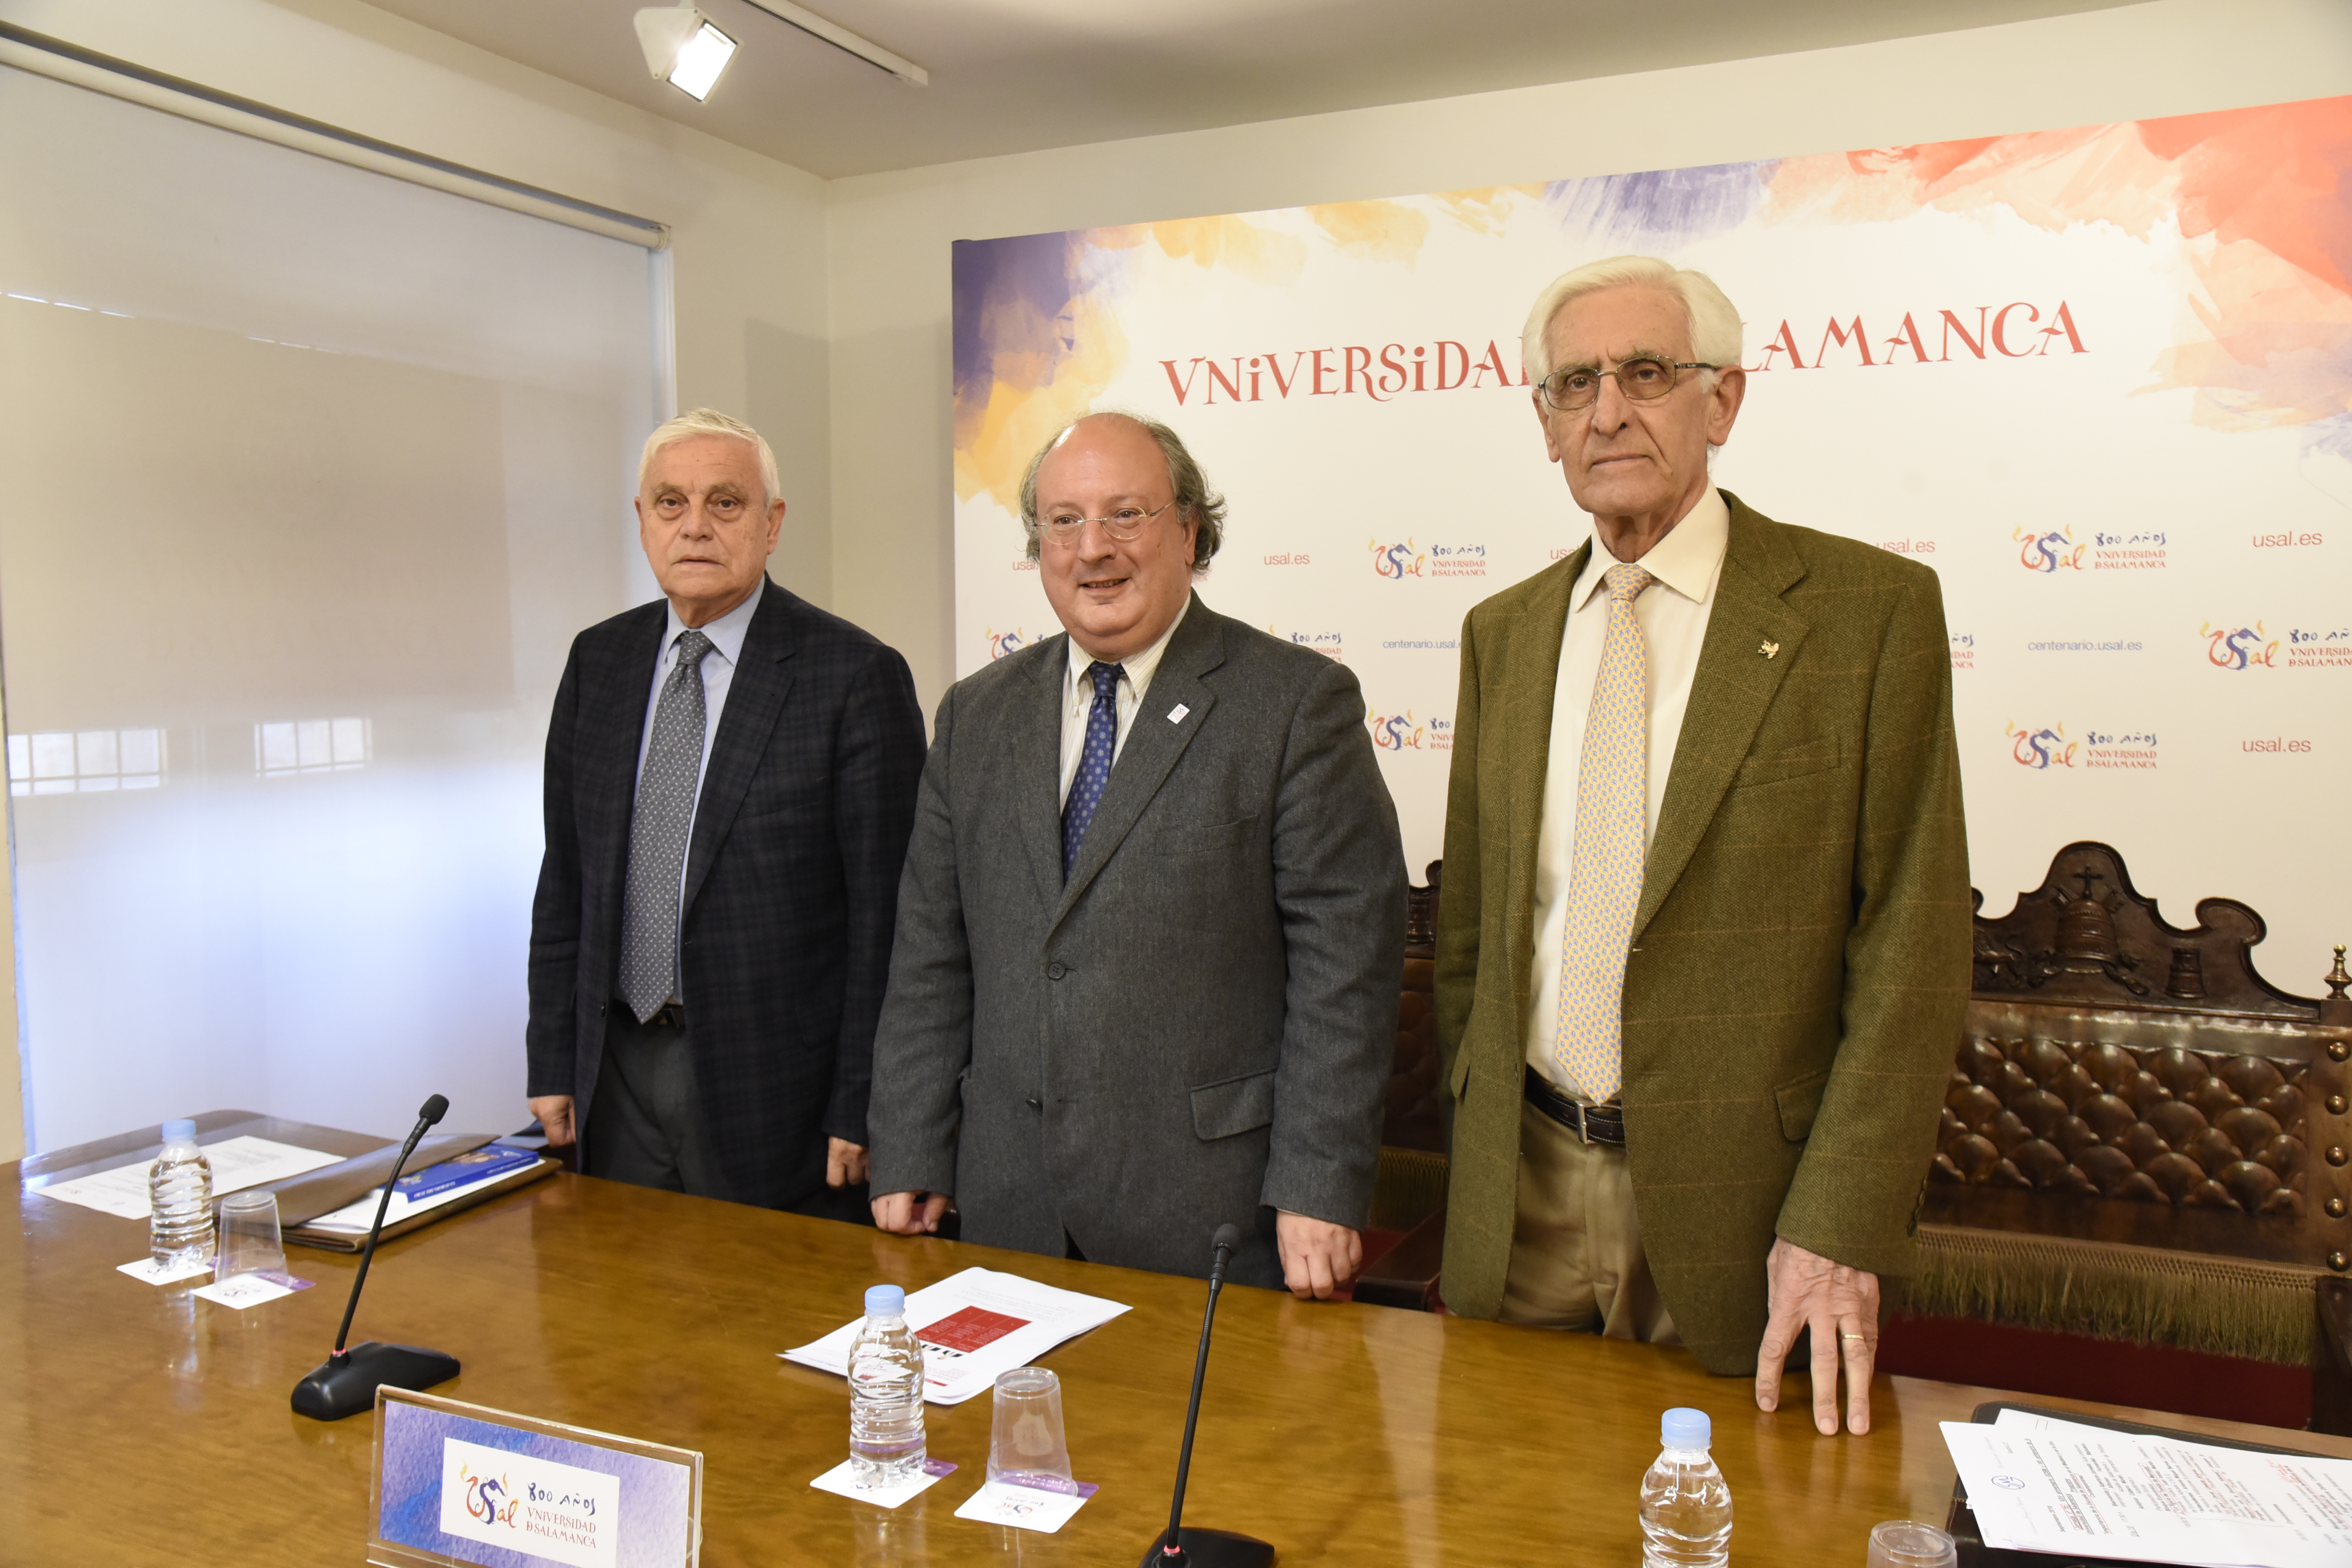 La Asociación Grupo de Opinión Salvador de Madariaga se suma al VIII Centenario de la Universidad ahondando en el legado de la Escuela de Salamanca